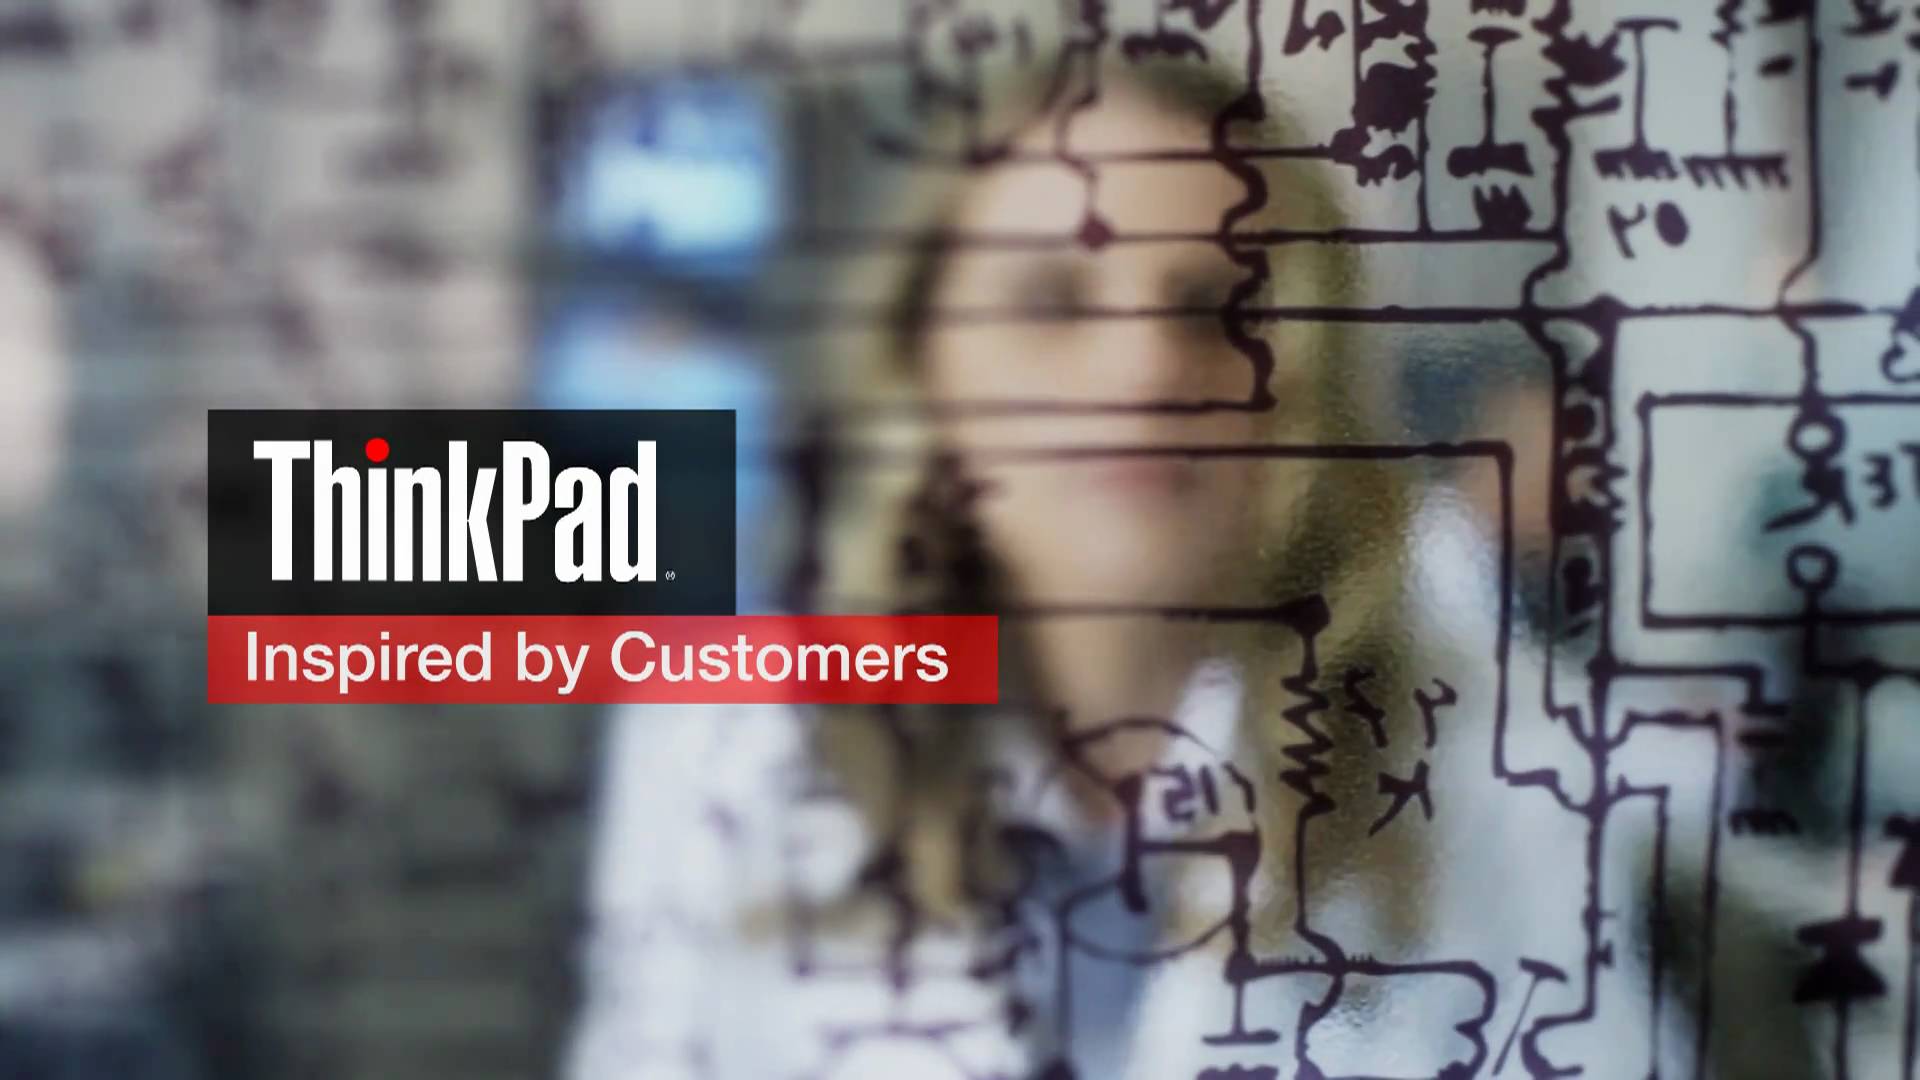 ThinkPad Wallpaper BlueGray Slanted 1400x1050 | Wallpaper: T… | Flickr